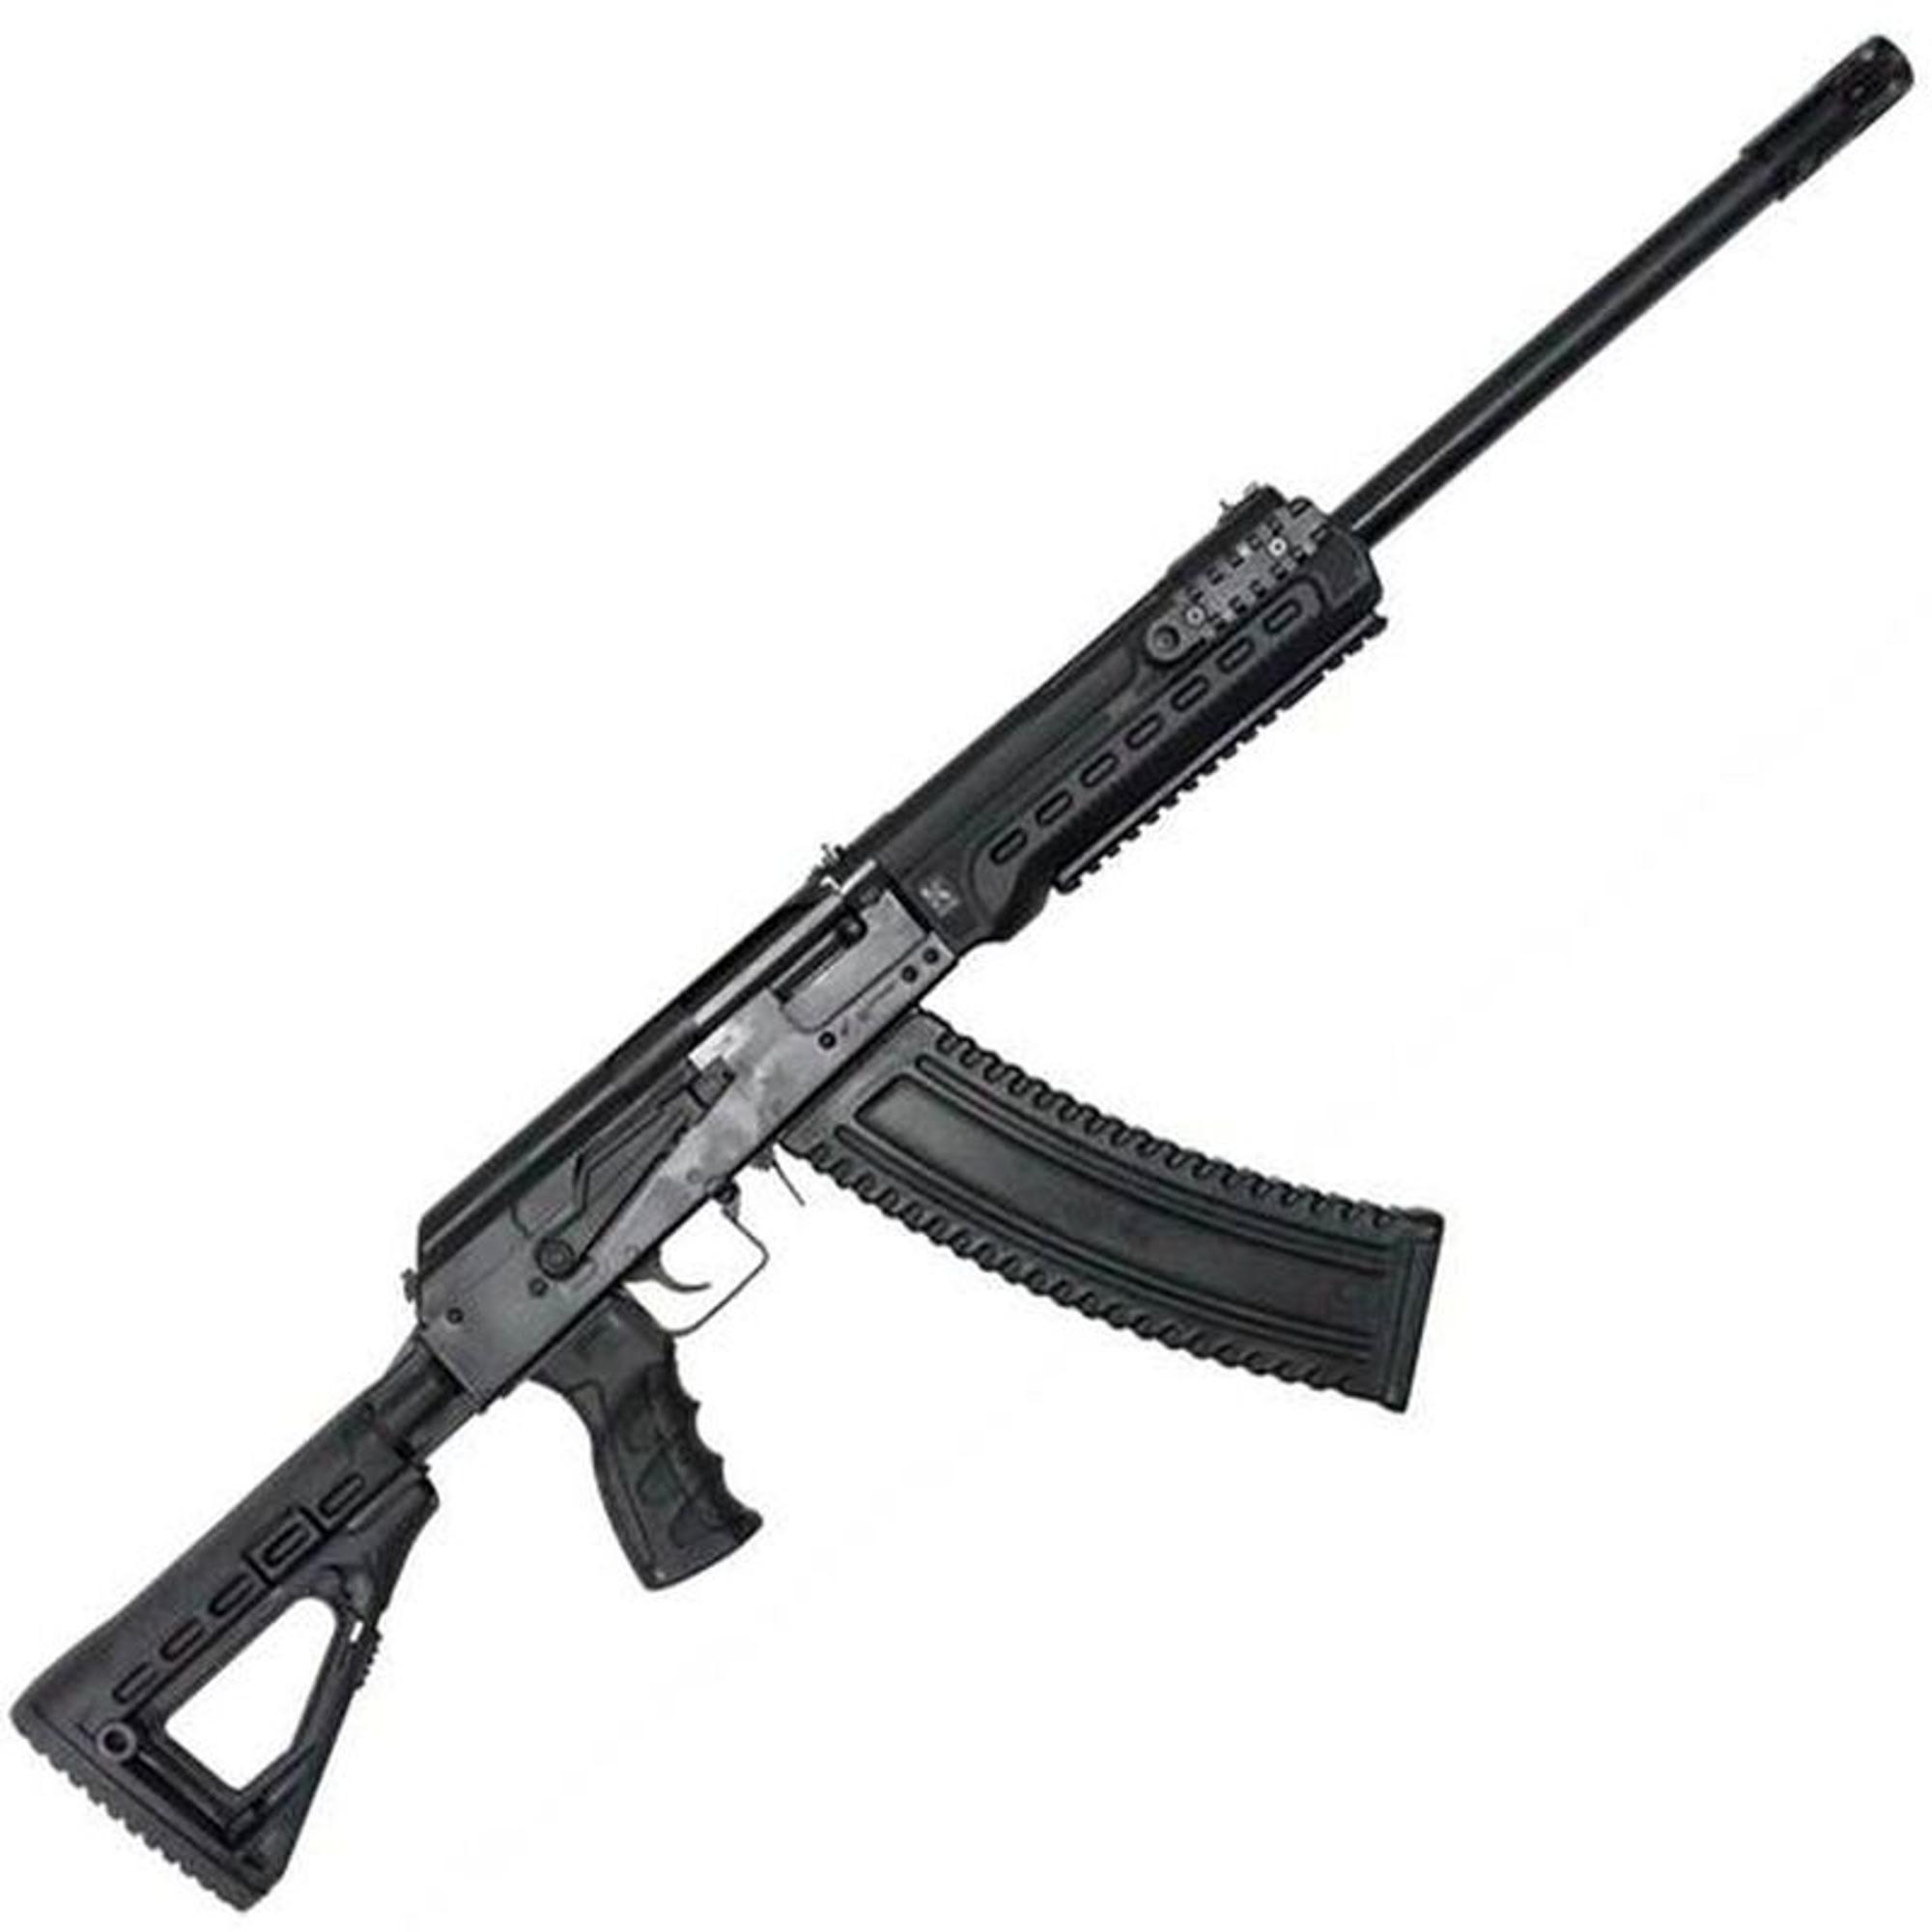 Kalashnikov Usa Ks- 12t Tactical Semi- Auto 12ga Shotgun - Black